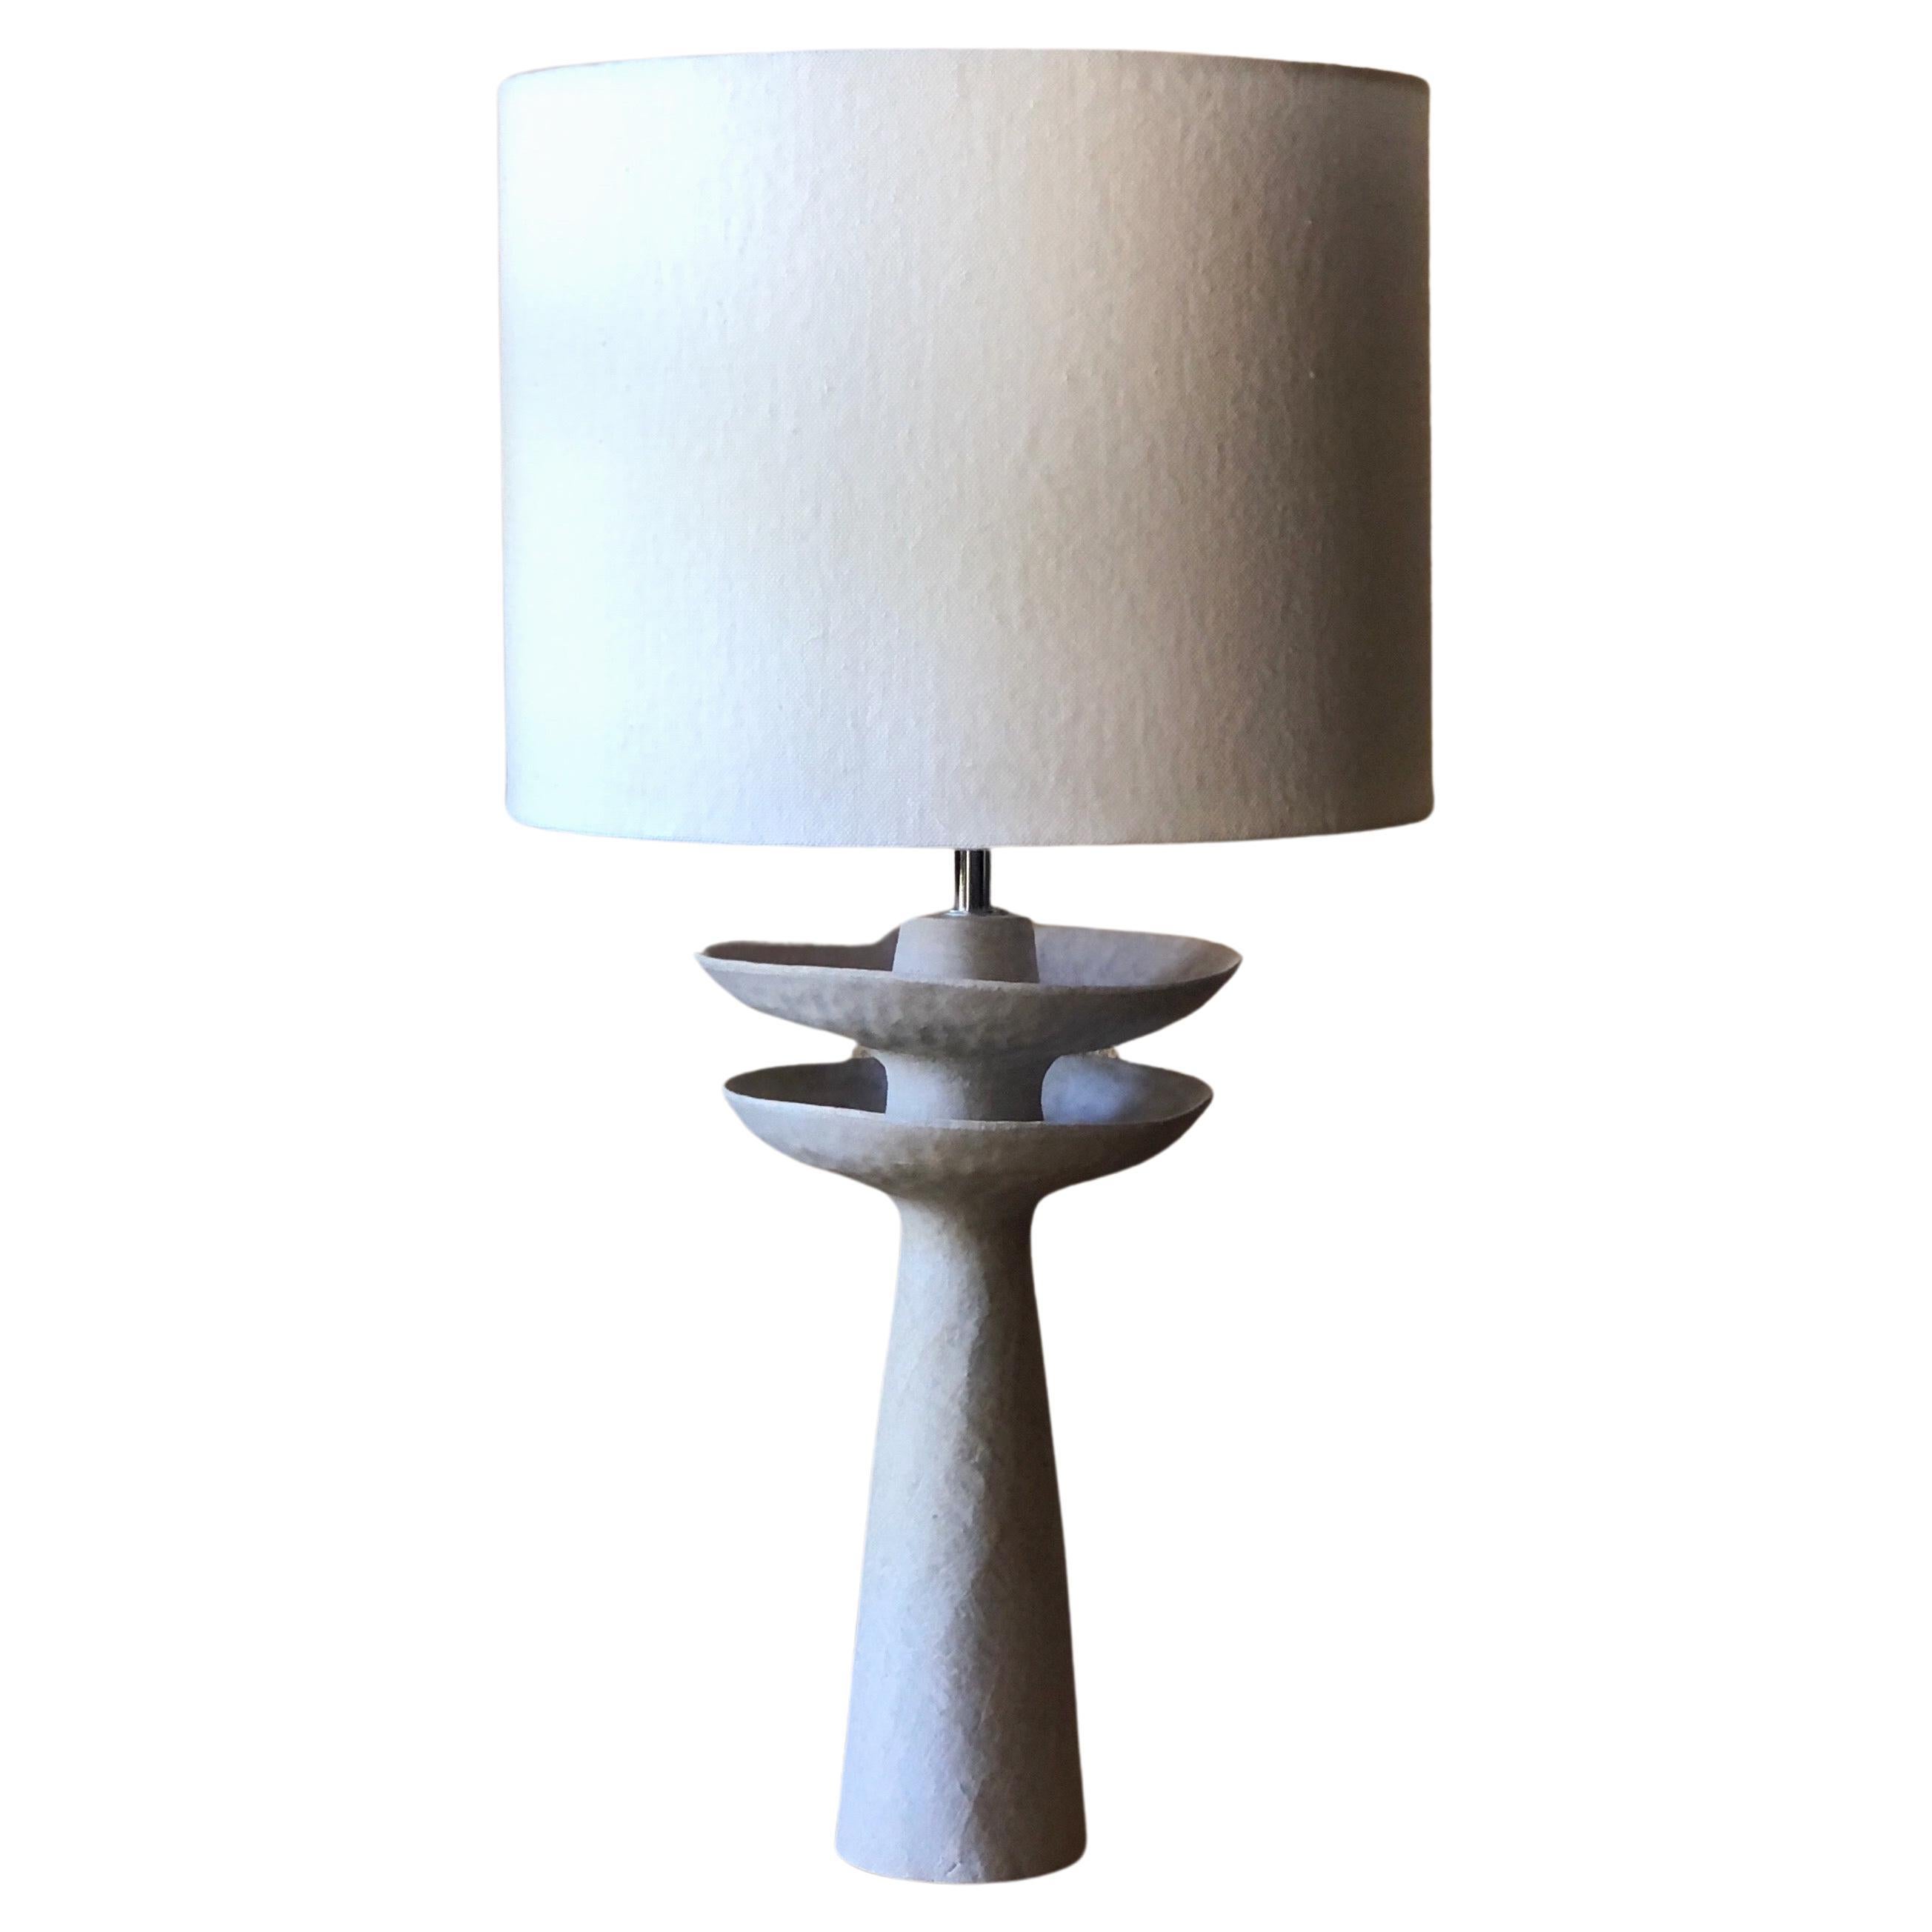 Lampe pied 60cm création artisanale -3 diamètres et hauteurs